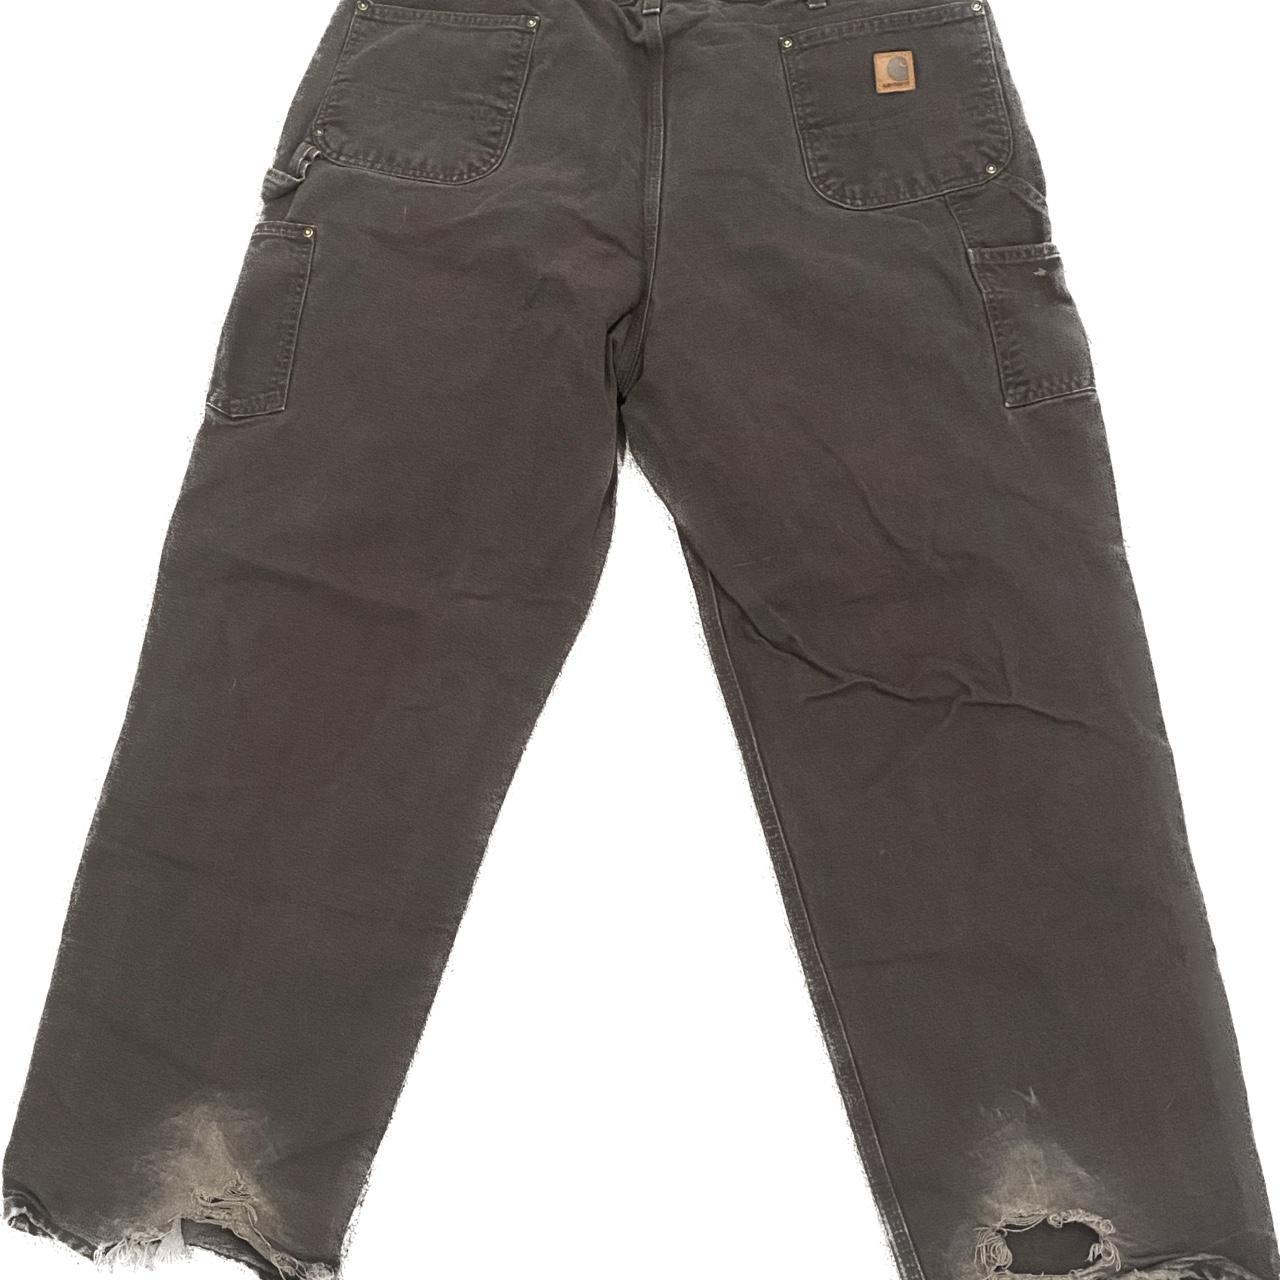 Carhartt Men's Brown Trousers (2)